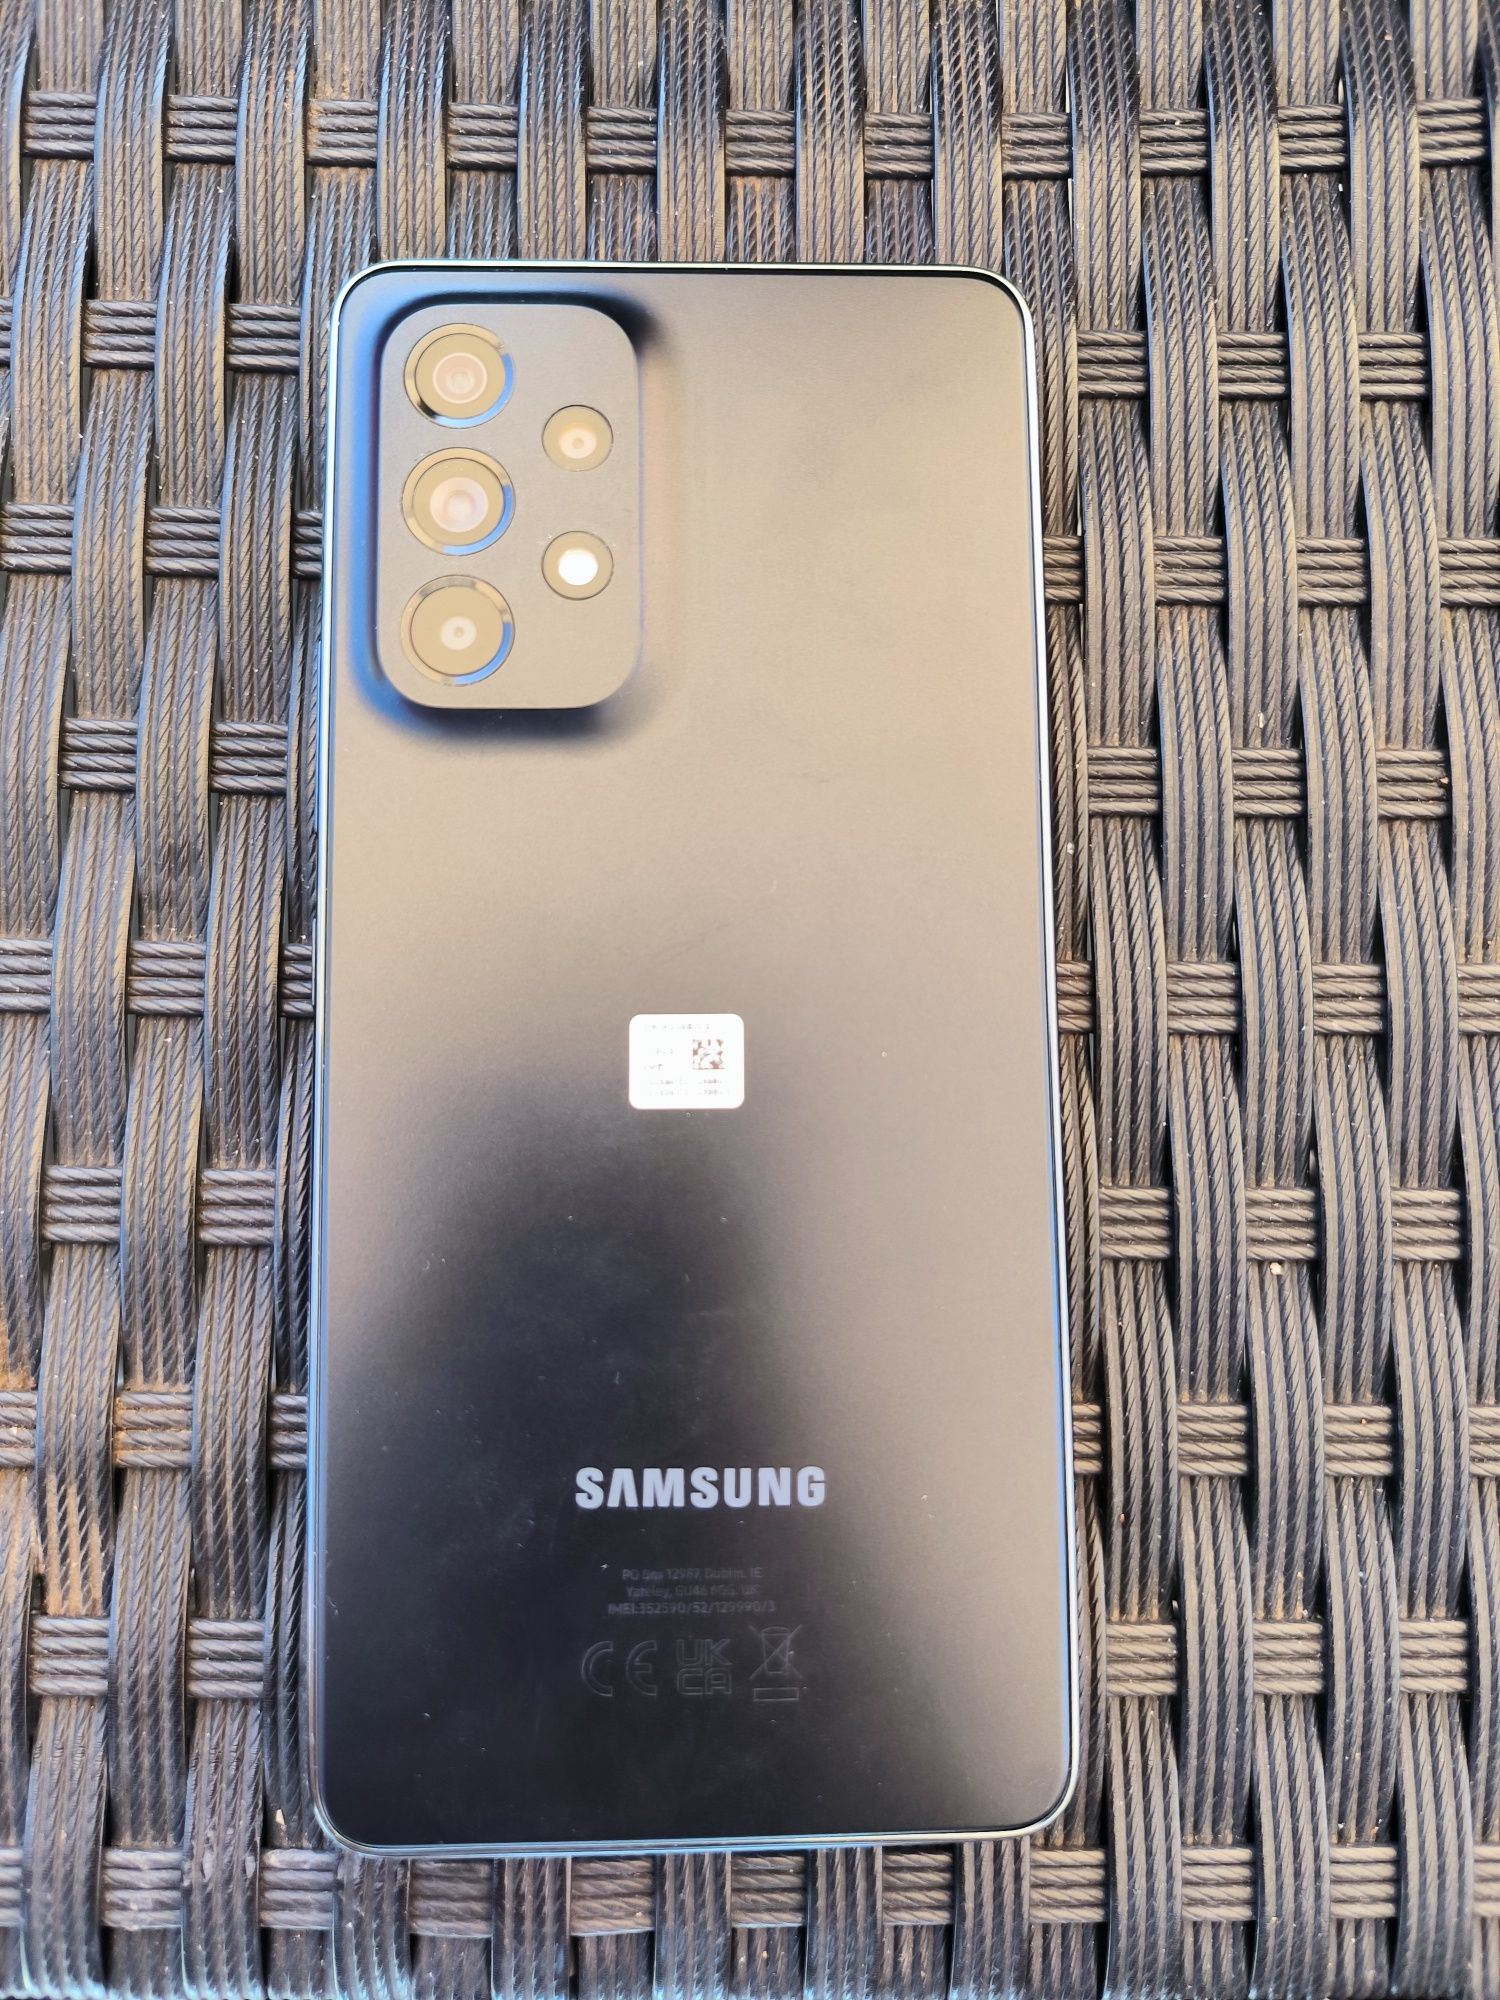 Samsung A53 5G Black NOU - 128 GB, 6GB ram